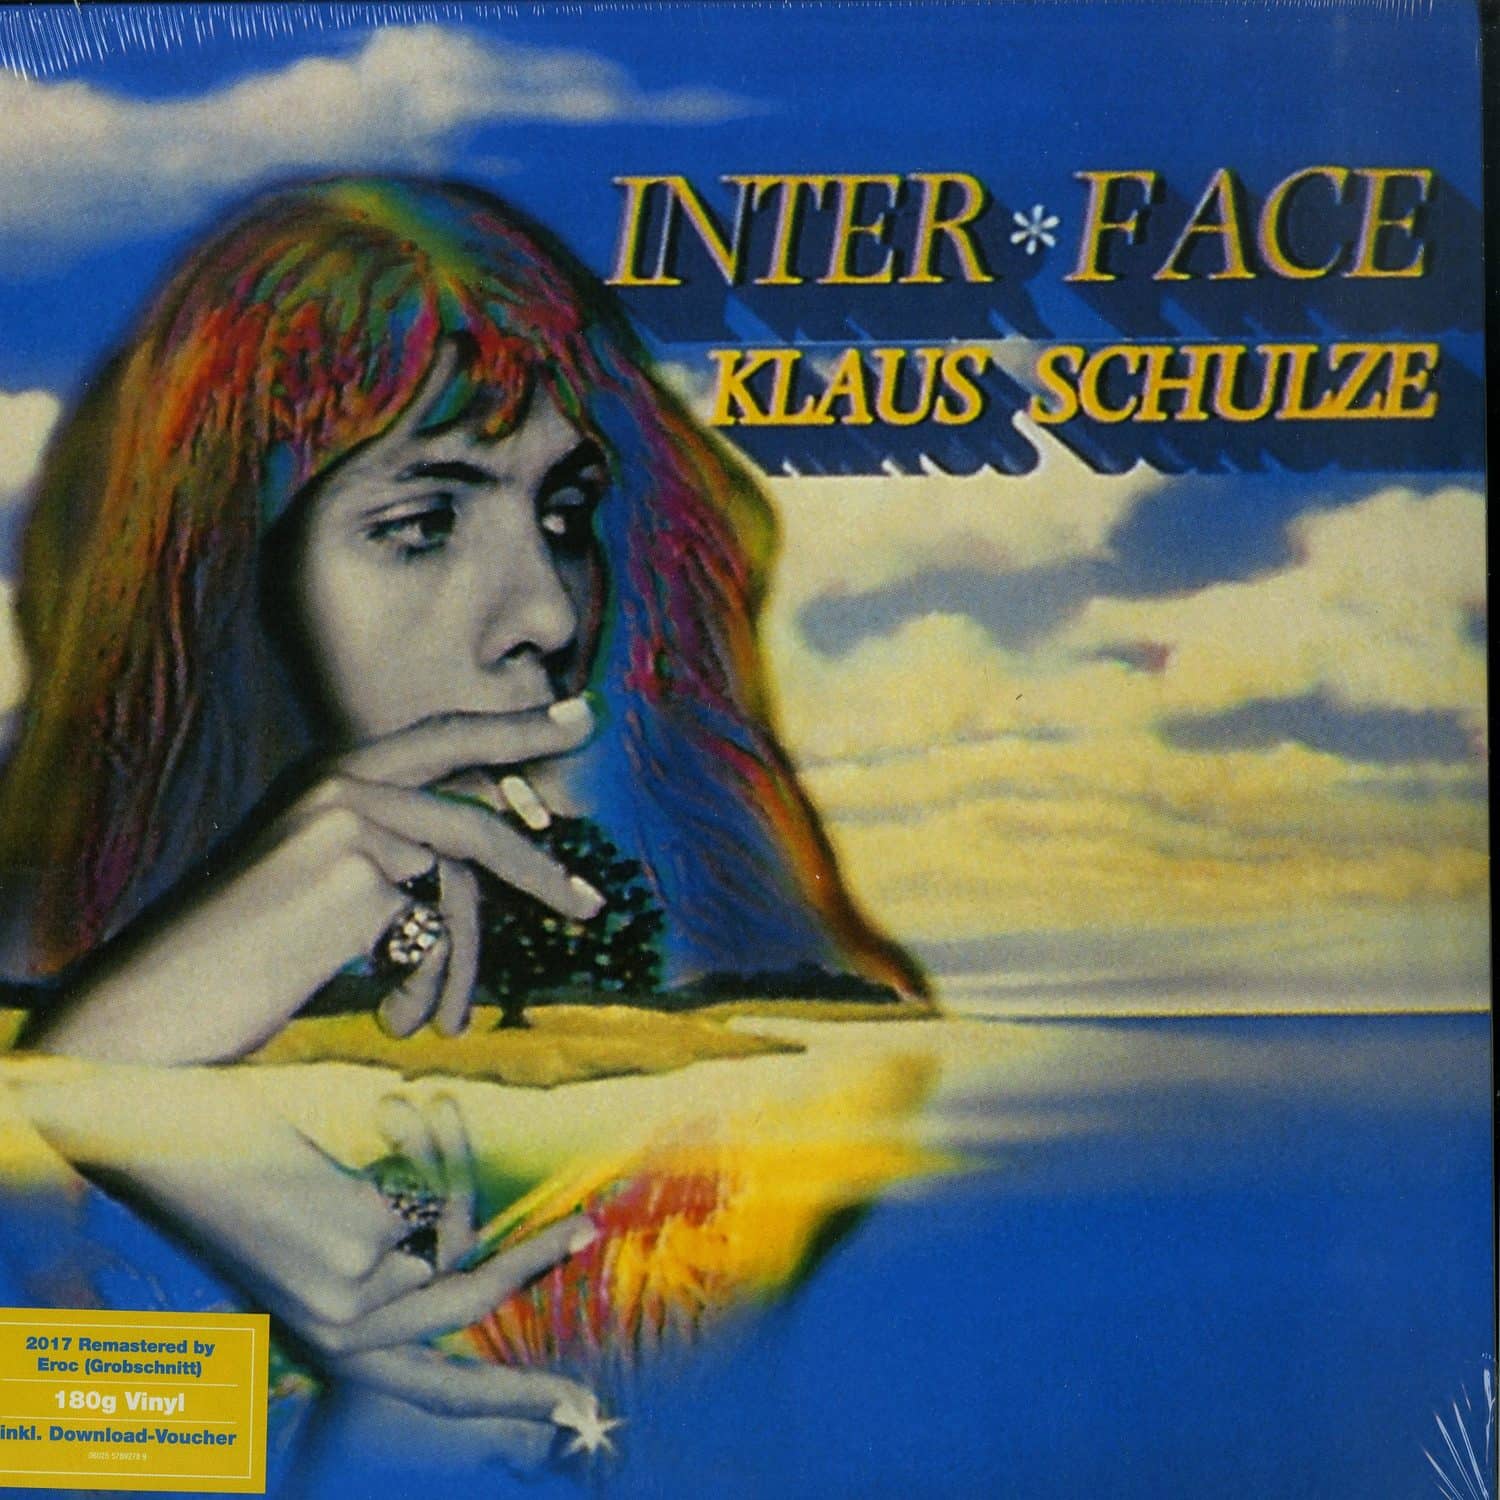 Klaus Schulze - INTER * FACE 